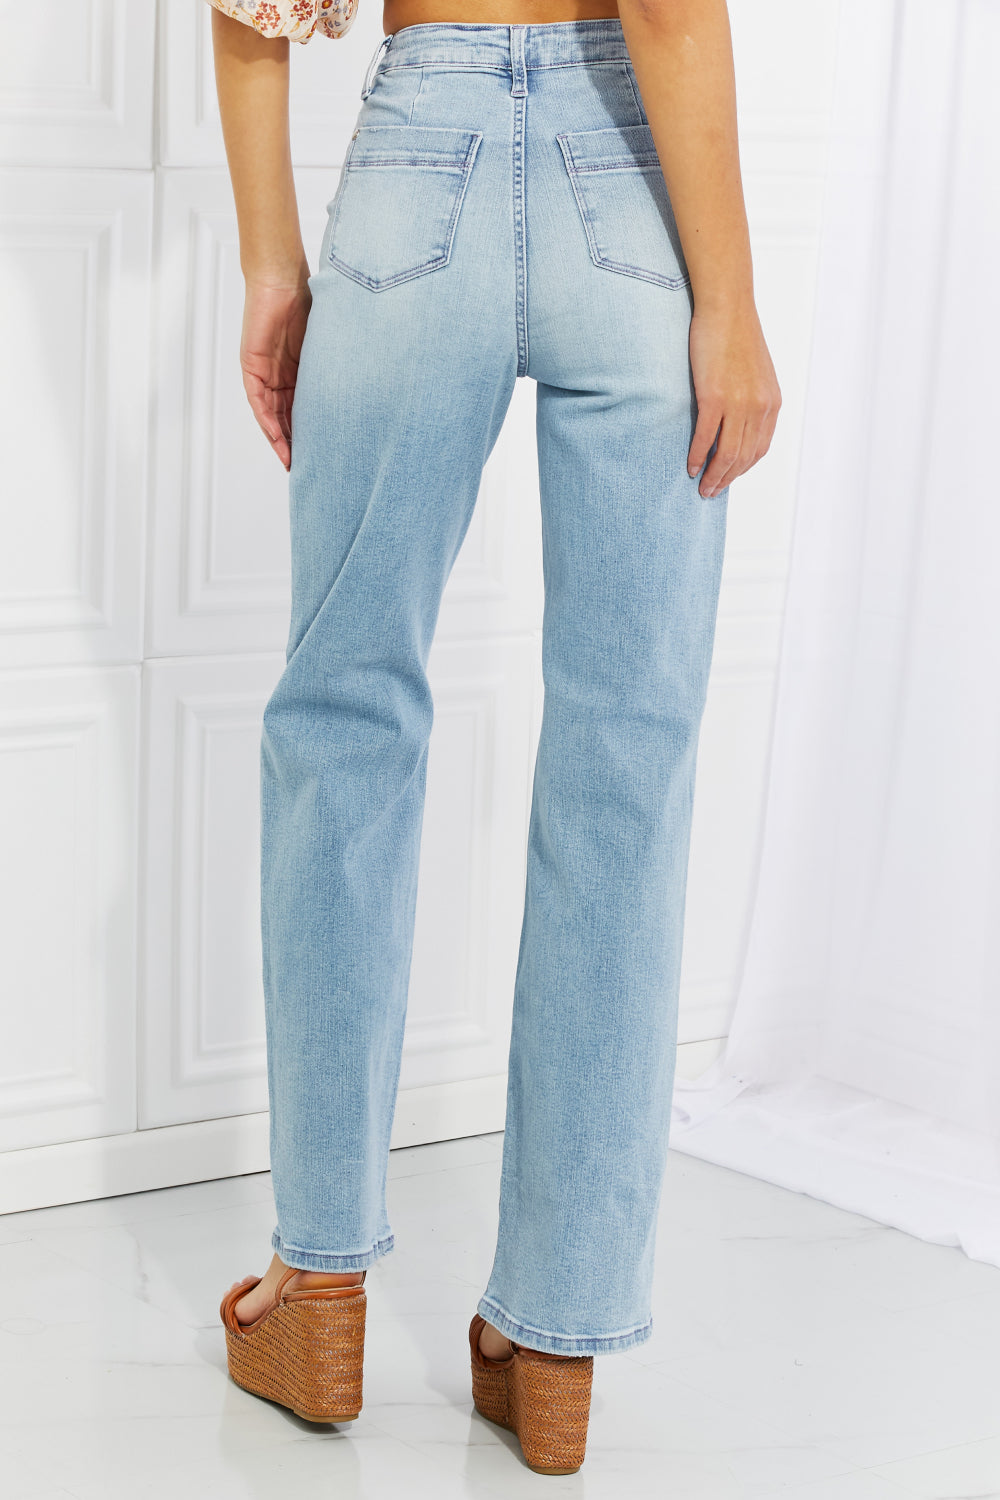 Judy Blue High Waist Wide Leg Jeans* - AnnRose Boutique